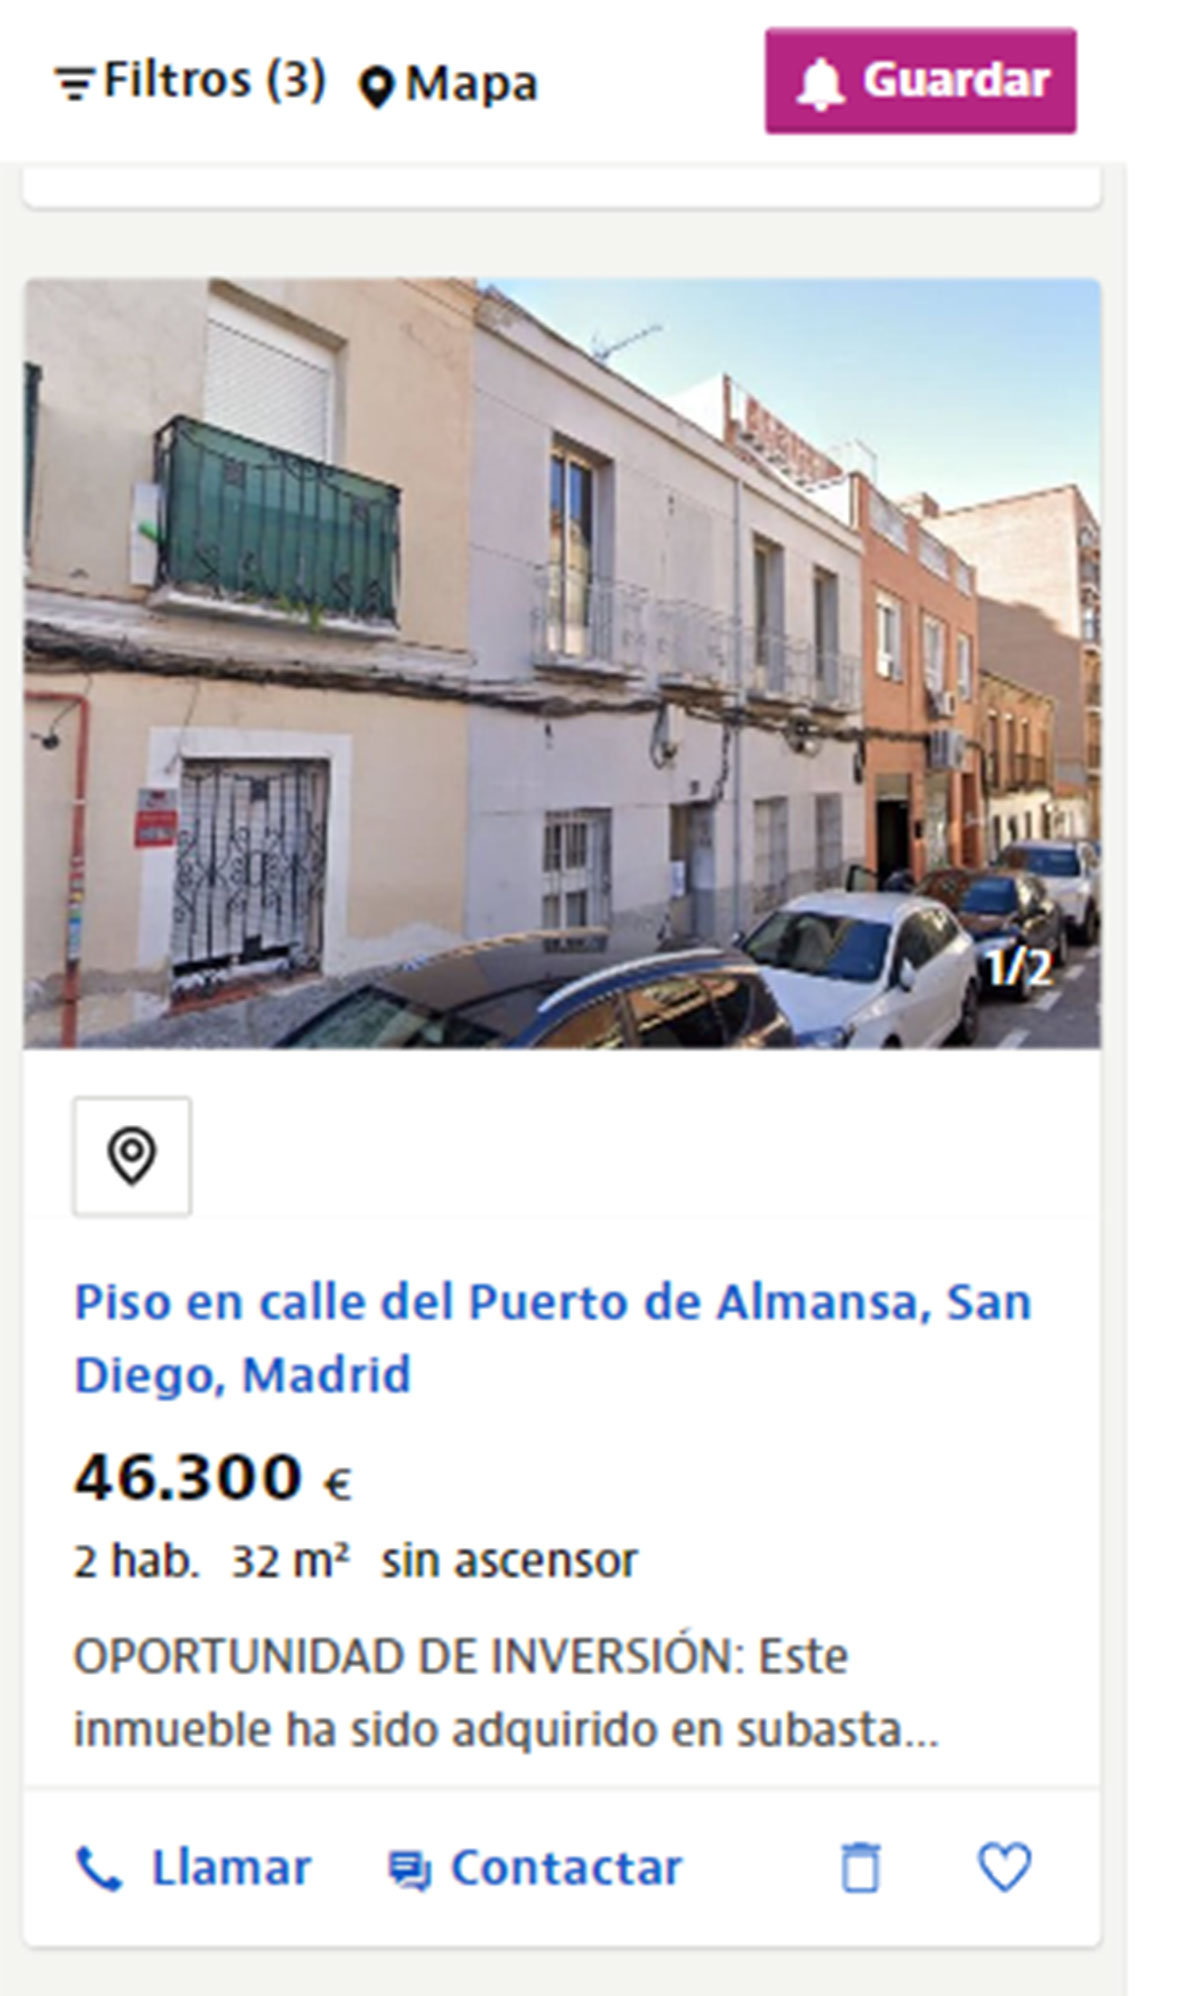 Piso cerca de Madrid por 46.300 euros